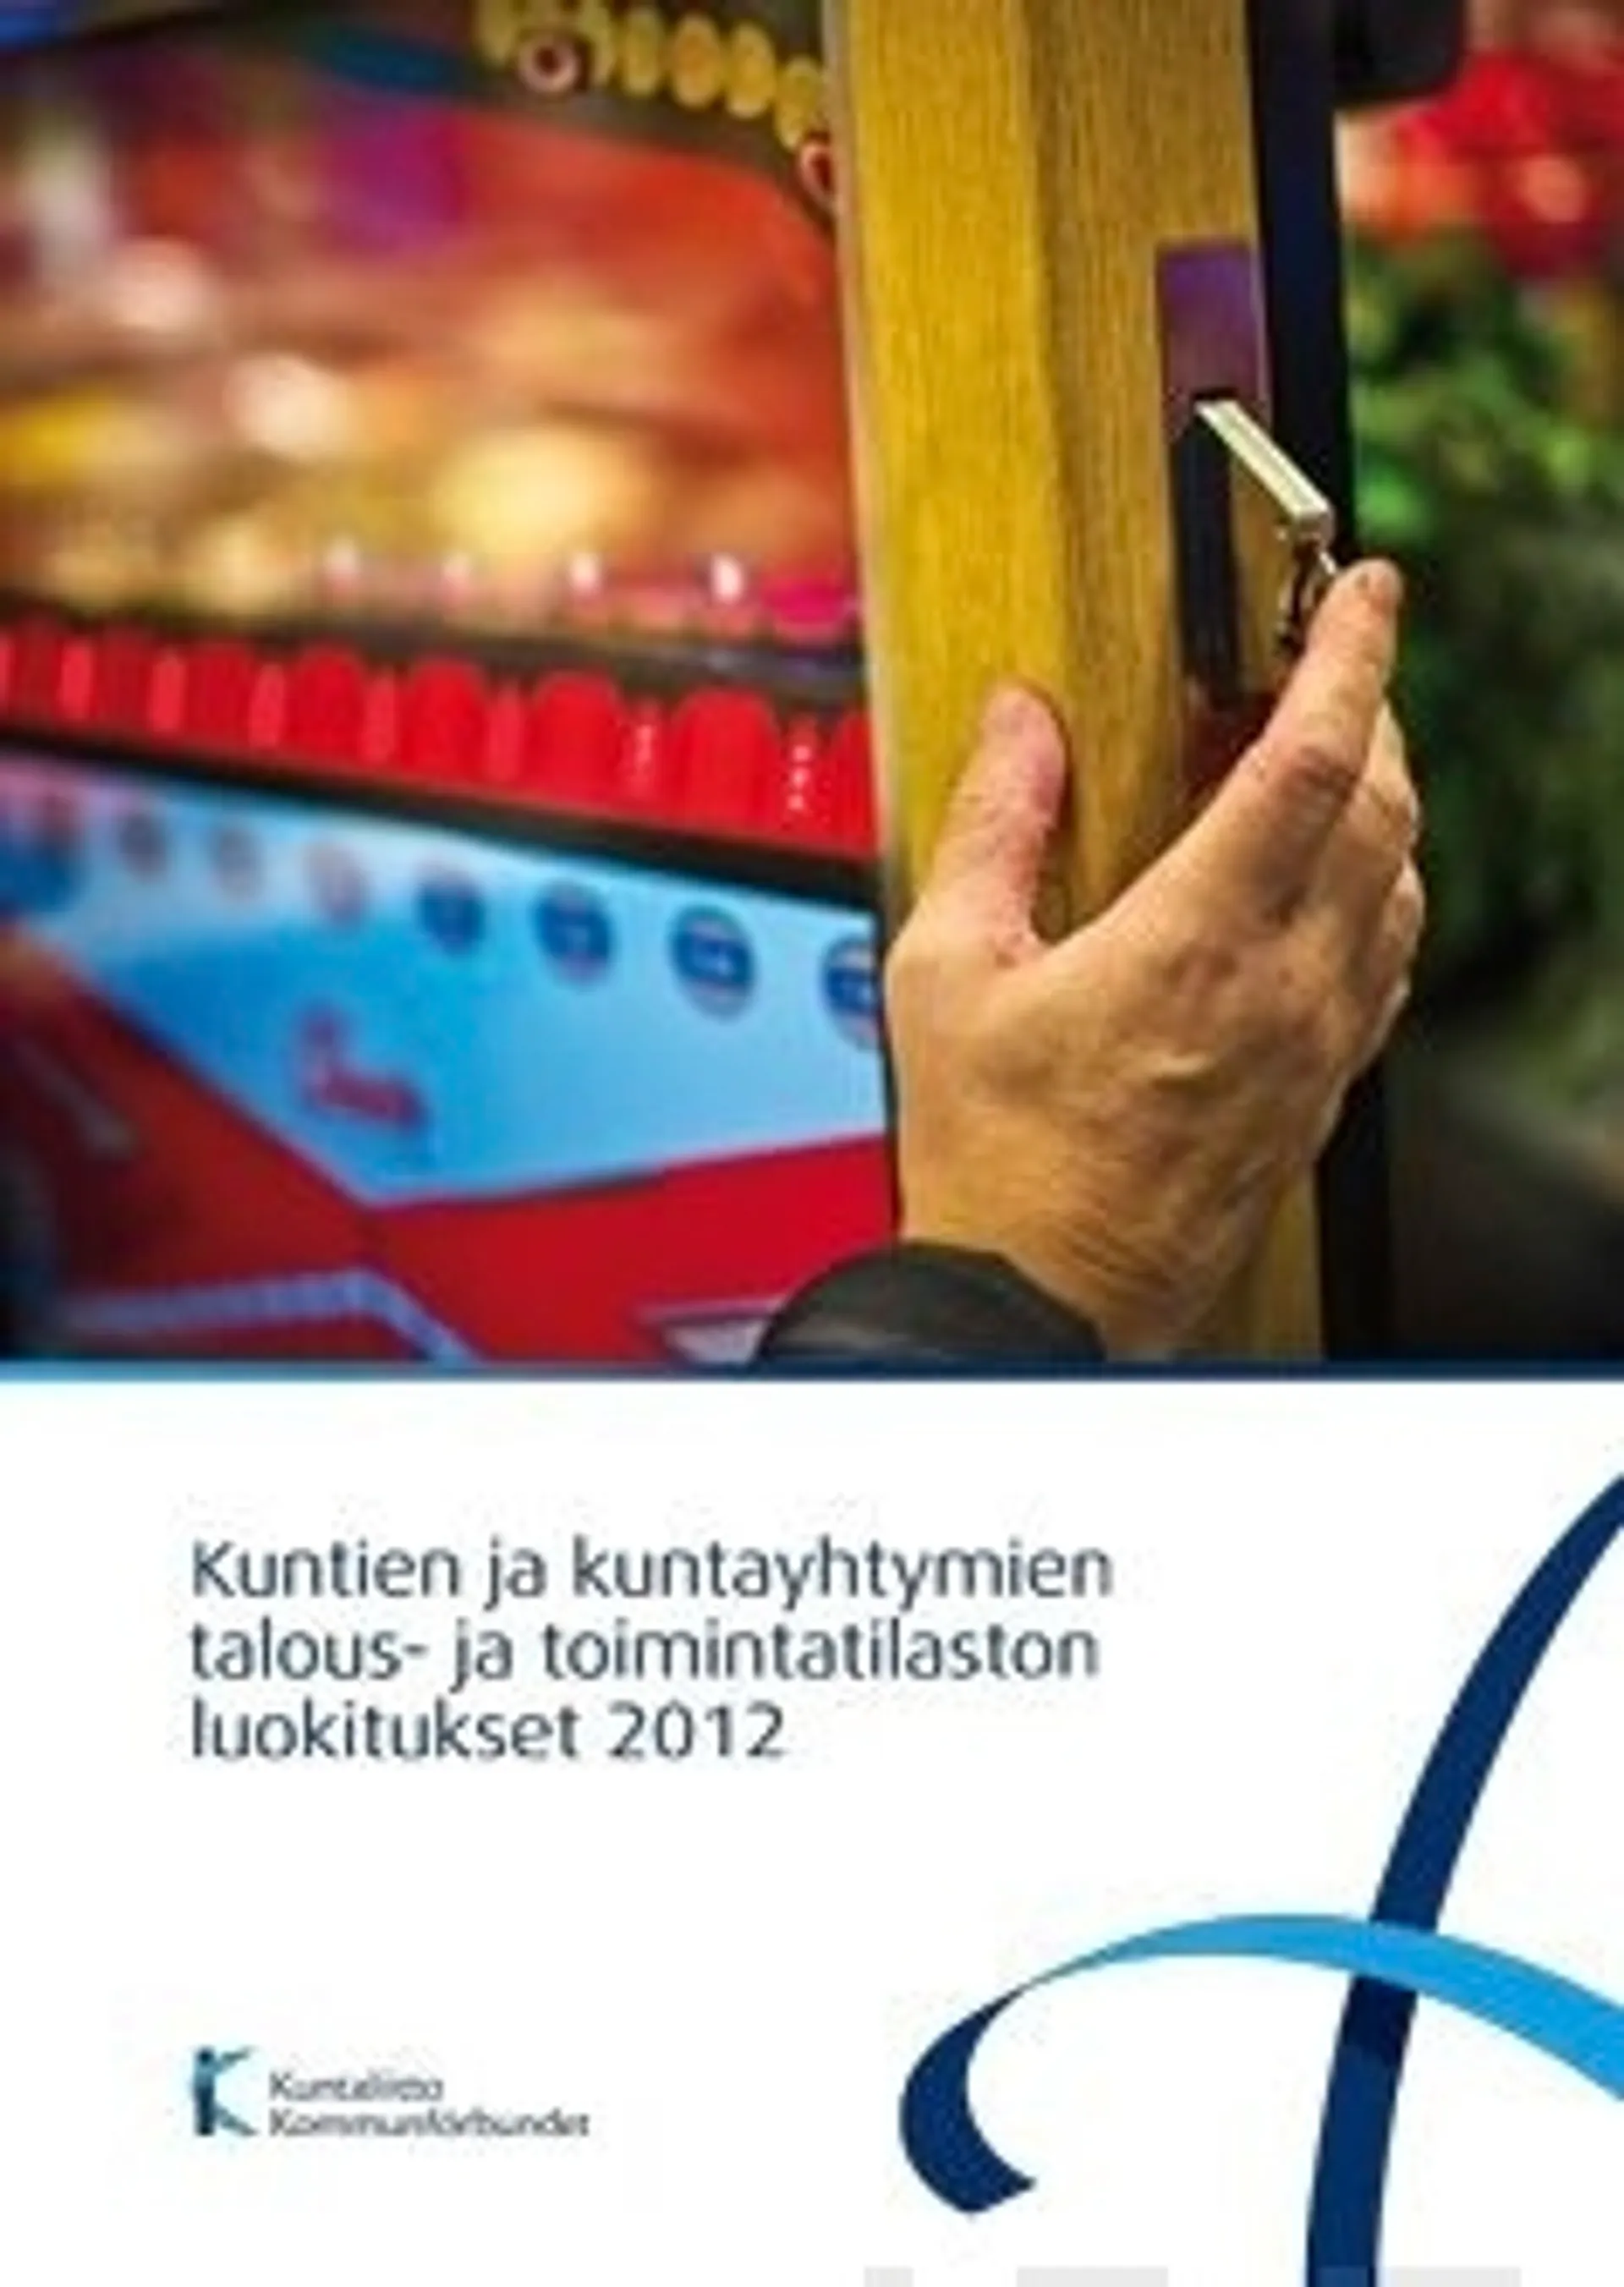 Kuntien ja kuntayhtymien talous- ja toimintatilaston luokitukset 2012